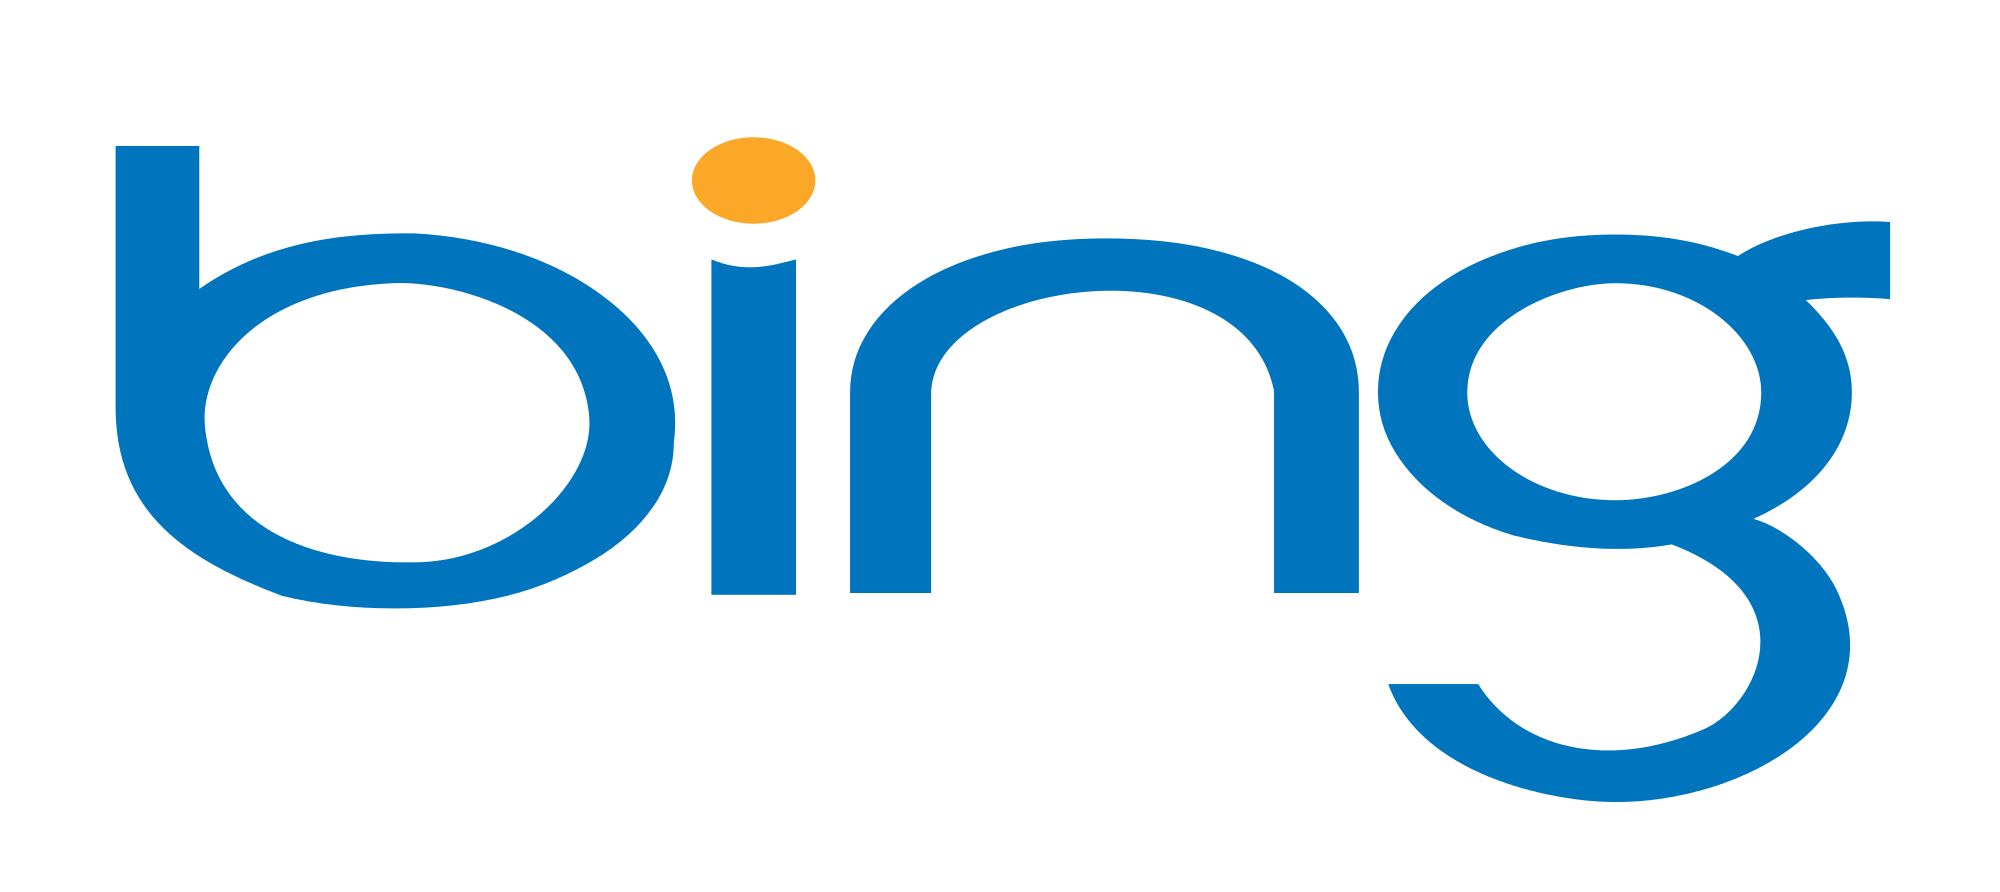 Bing Rewards Logo - Bing Rewards ! Bing Rewards Dashboard ! Bing Rewards Bot - Guide to ...